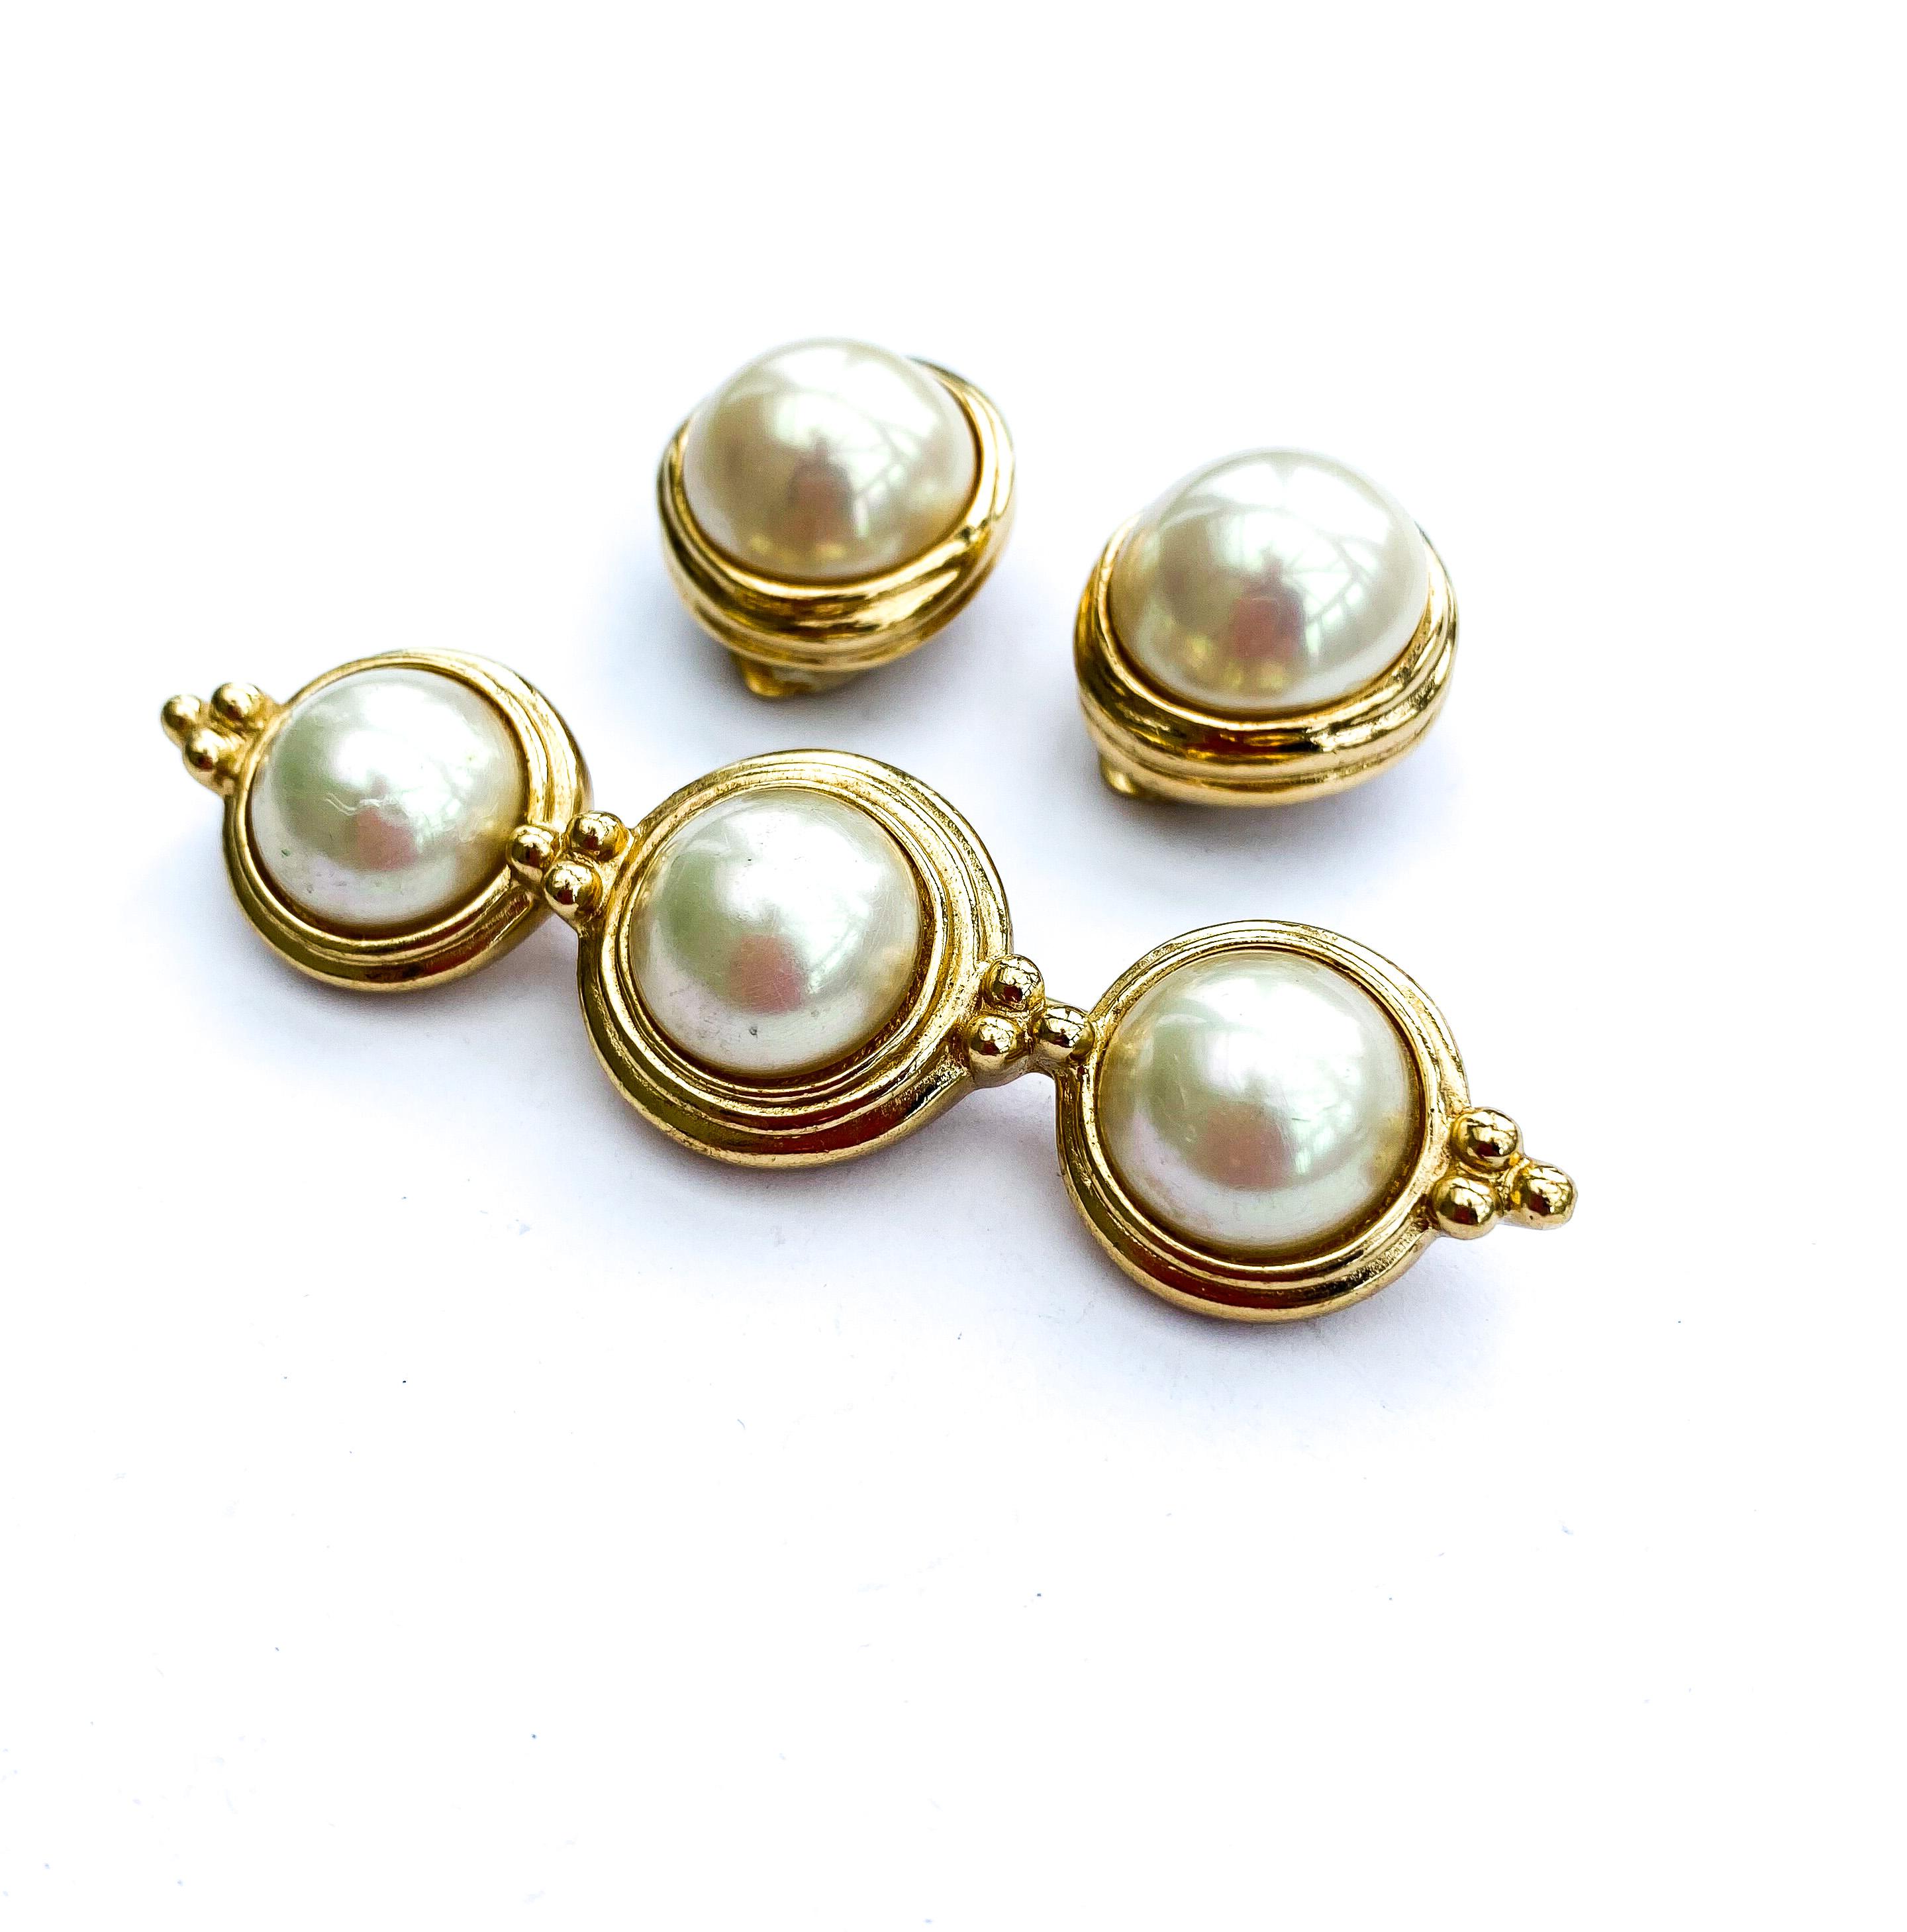 Ein sehr tragbarer und klassischer Look für Dior, 1980er Jahre. Elegant und schlicht, von sehr guter Qualität und einem schönen Glanz der Perlen, kann sie als Brosche und Ohrringe, oder nur als Brosche oder nur als Ohrringe getragen werden. Ein